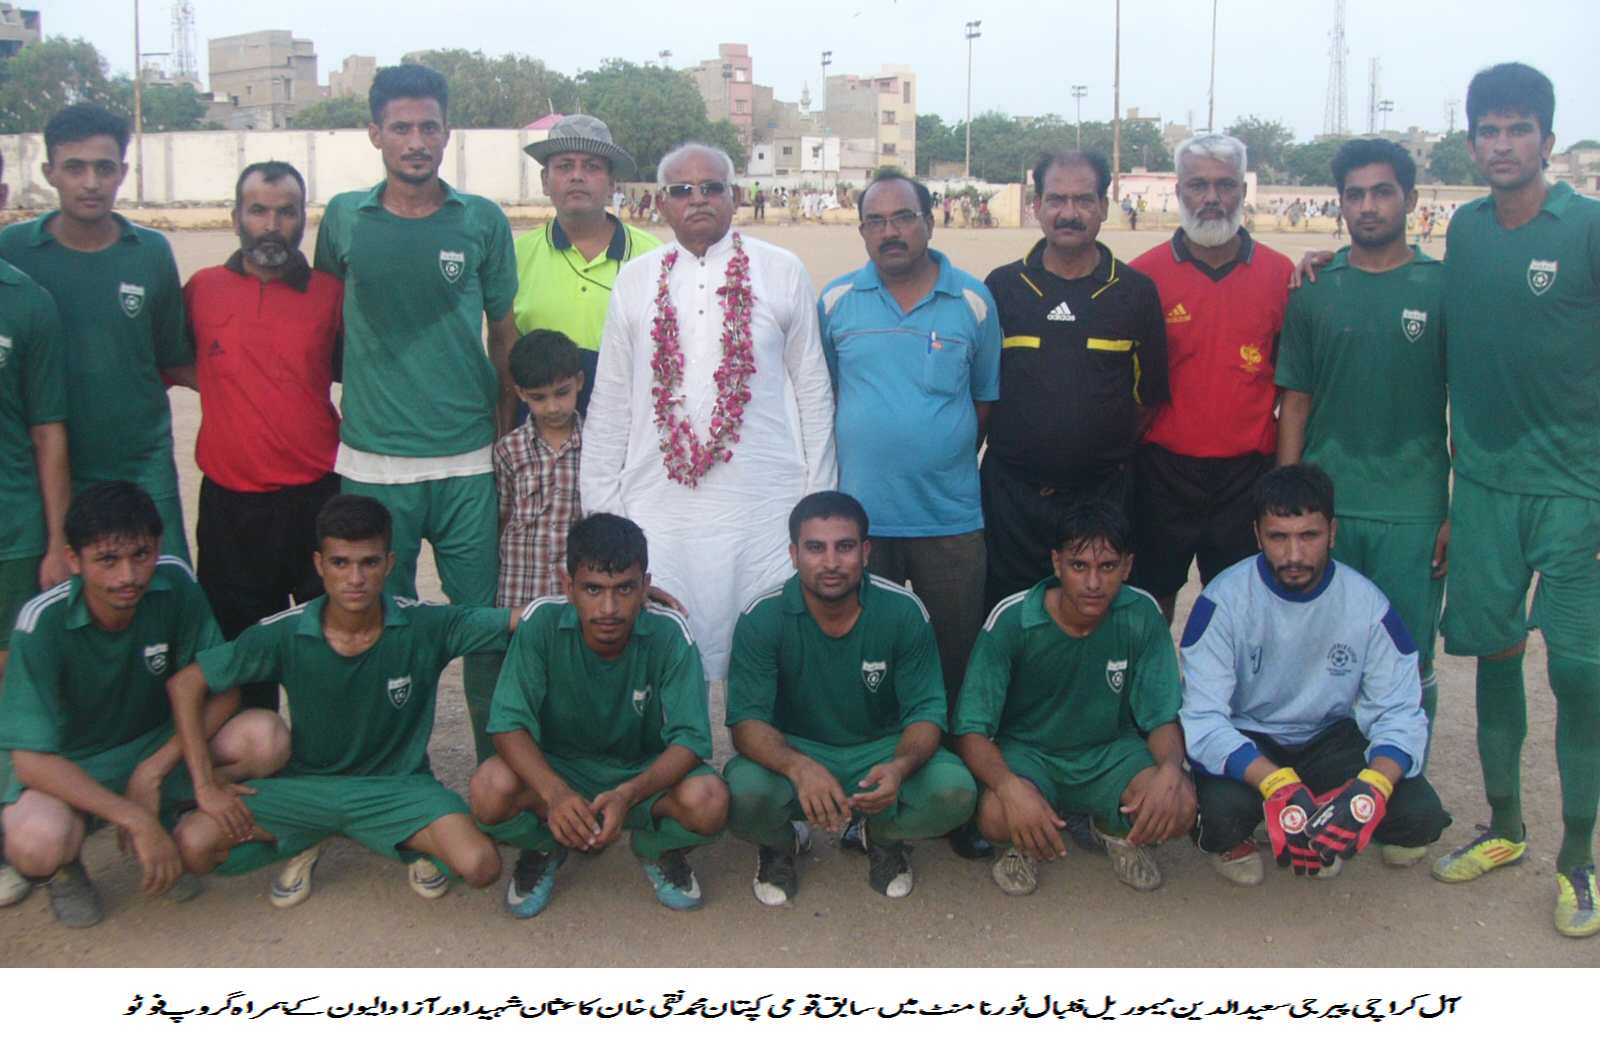 PIR G FOOTBALL TOURNAMENT: Usman Shaheed FC Keamari reach semi-final